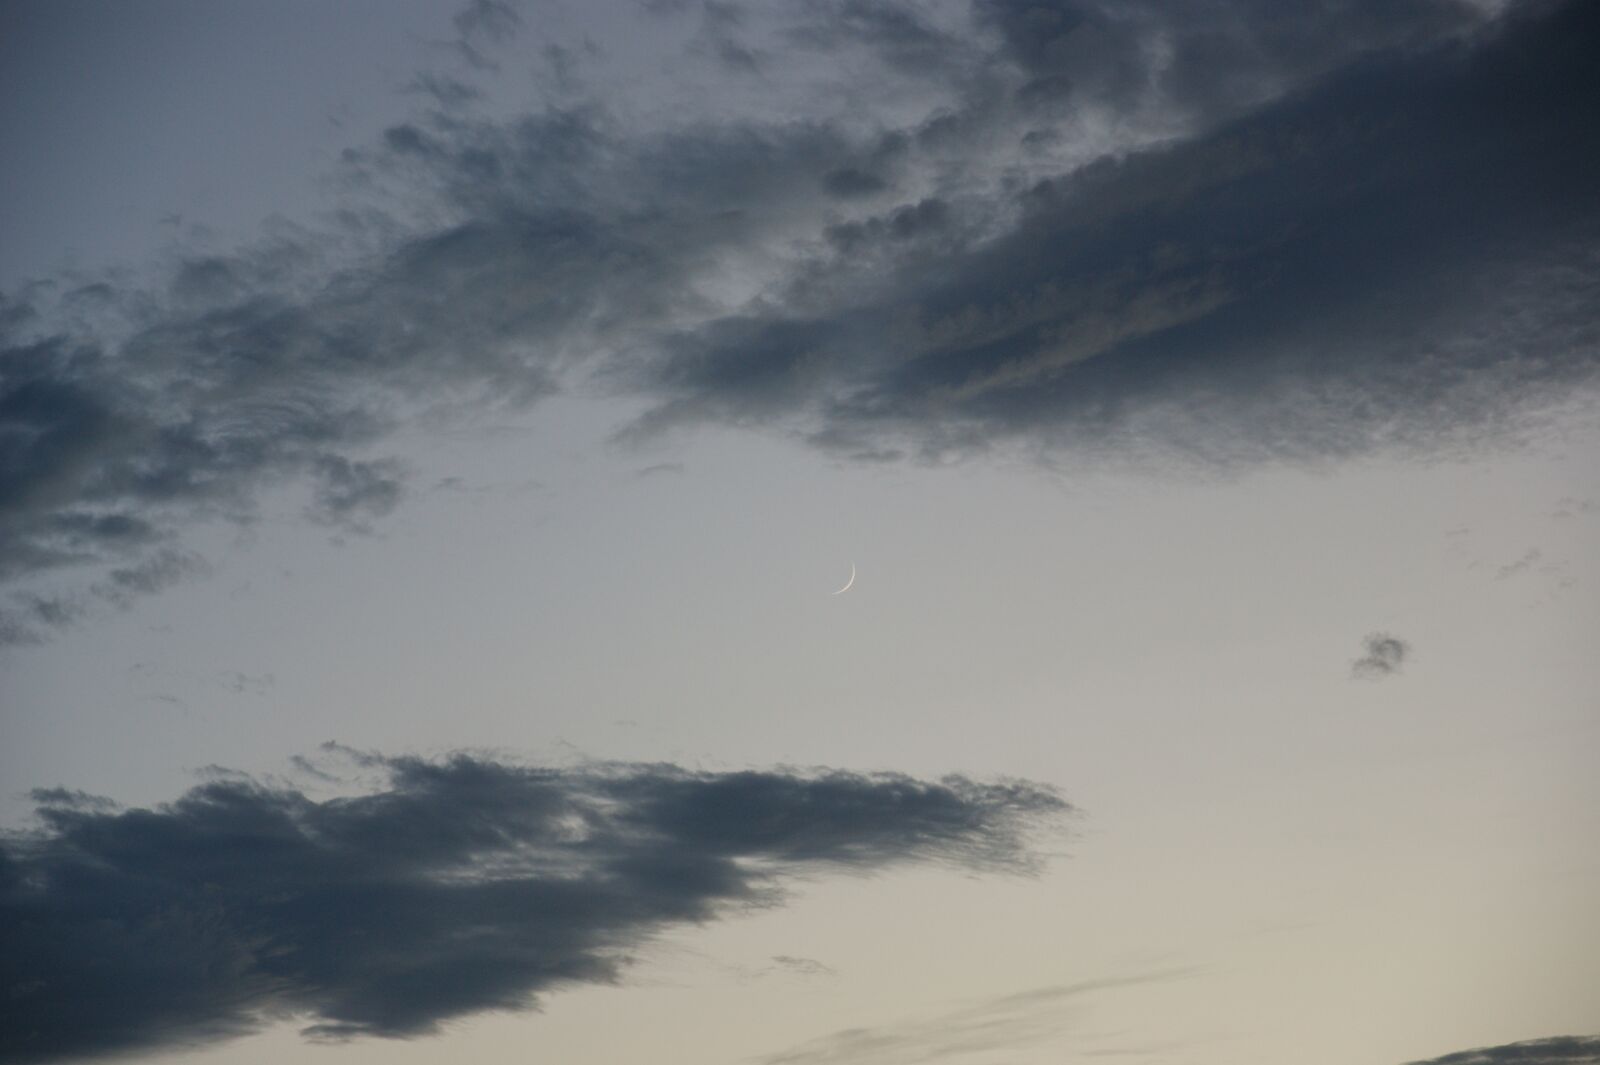 Sony Alpha DSLR-A350 sample photo. Moon, at dusk, sunset photography